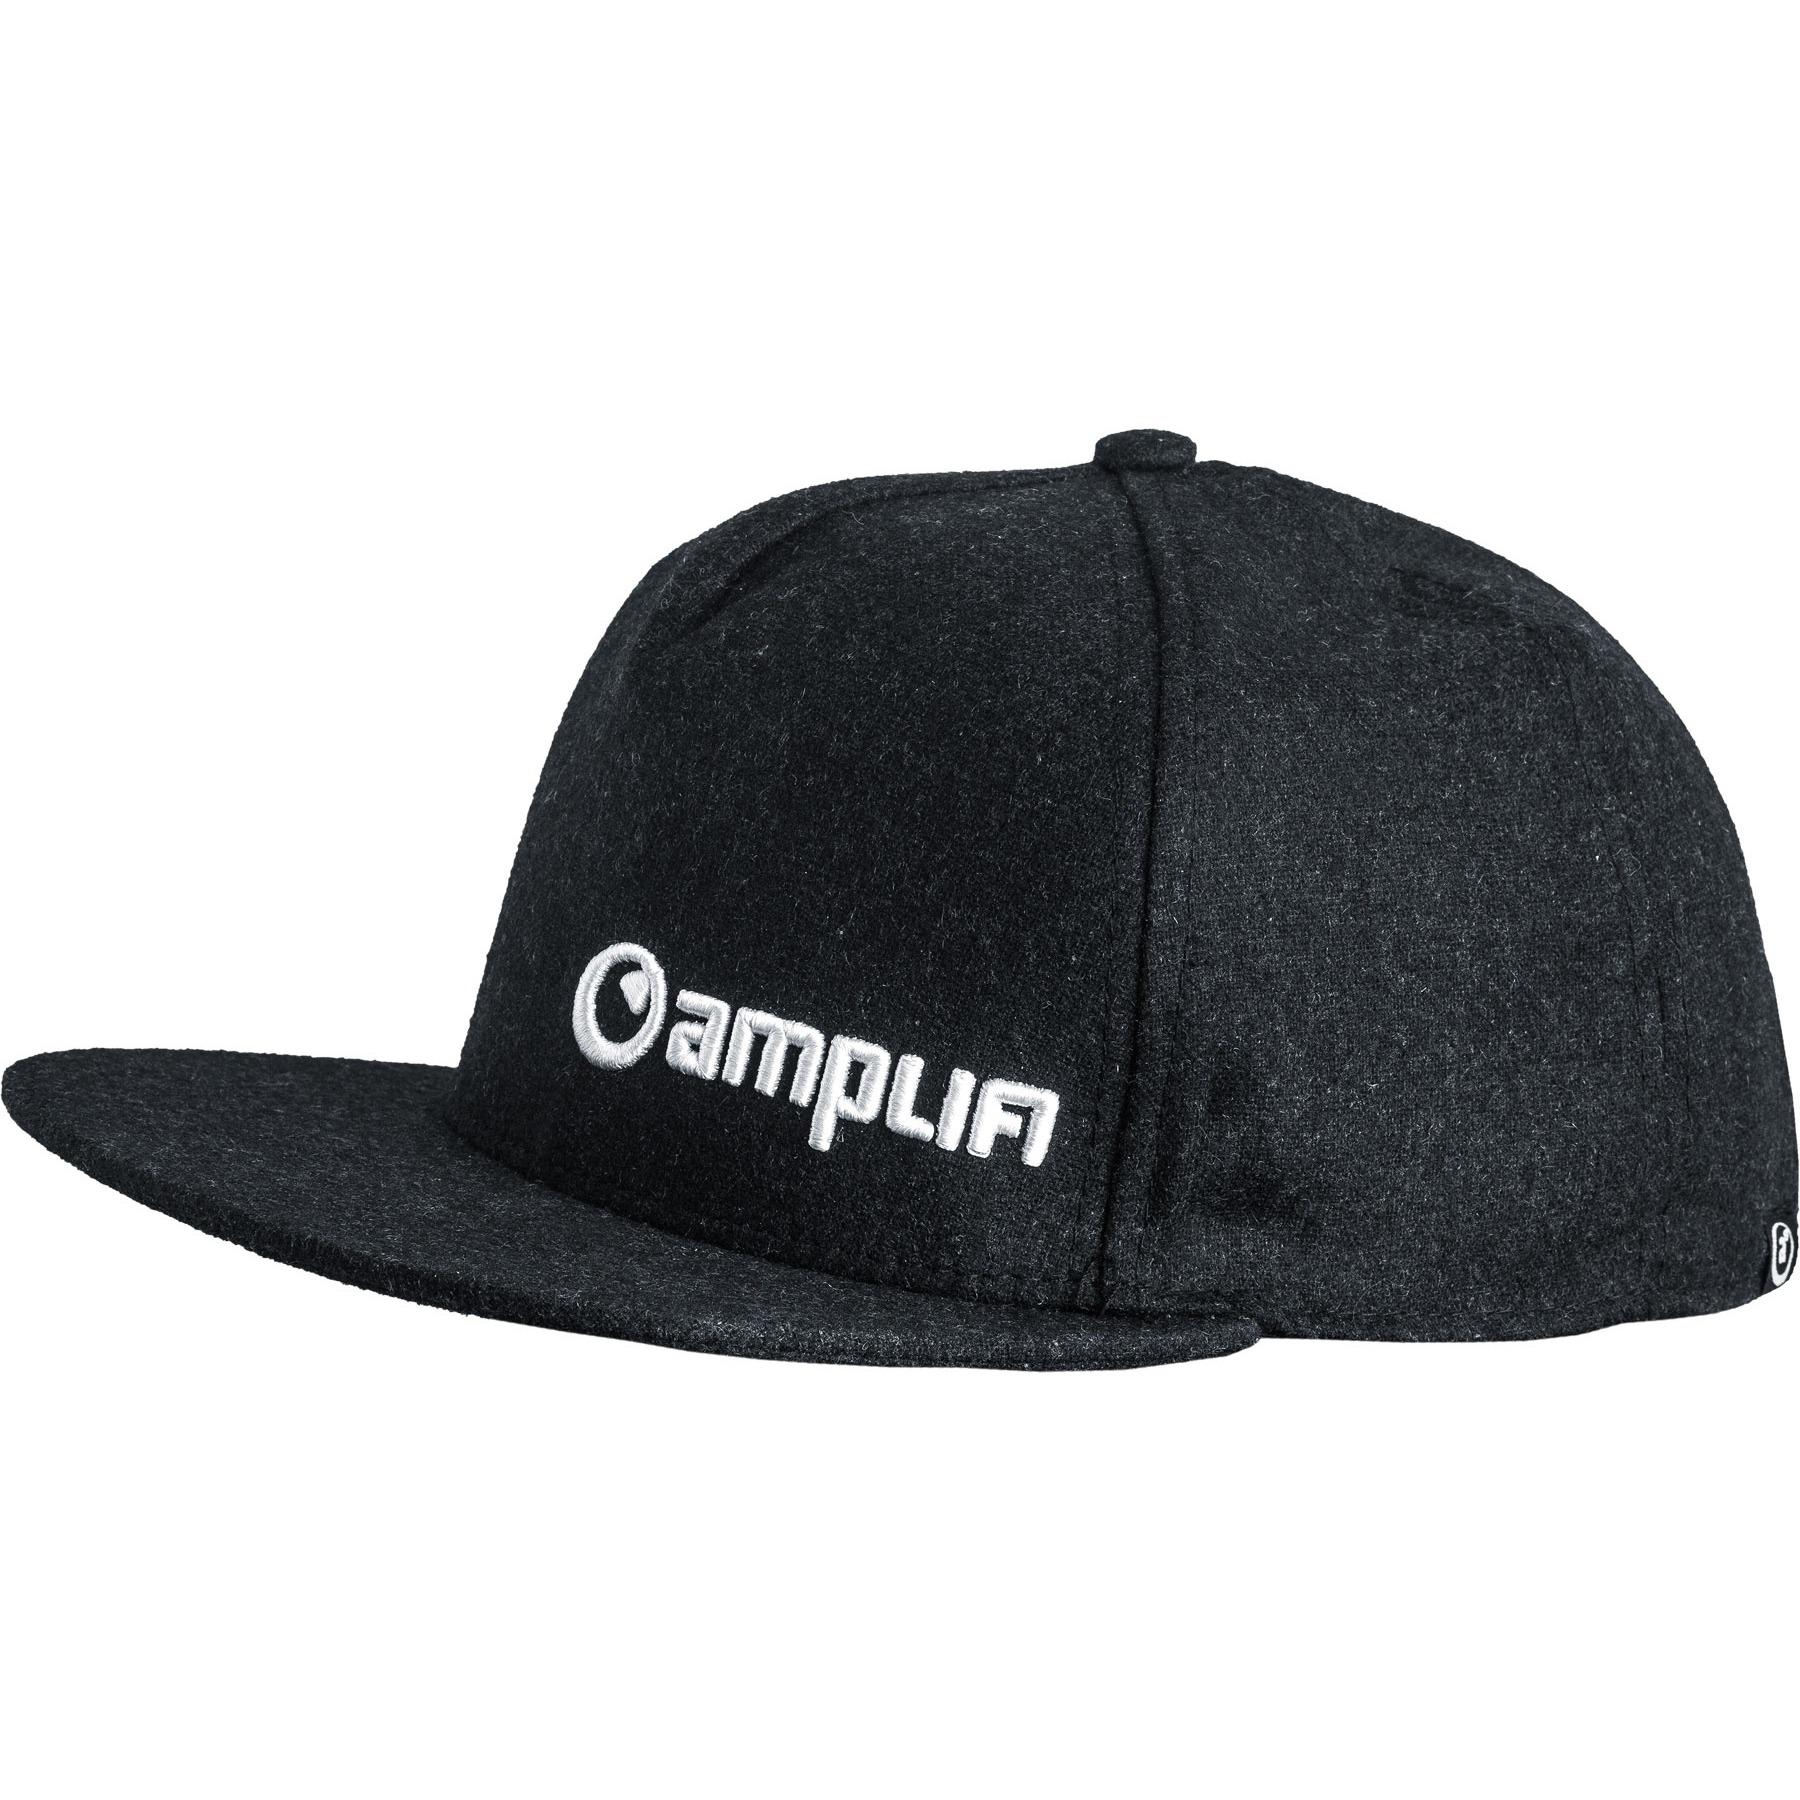 Productfoto van Amplifi Team Hat Snapback Cap - charcoal